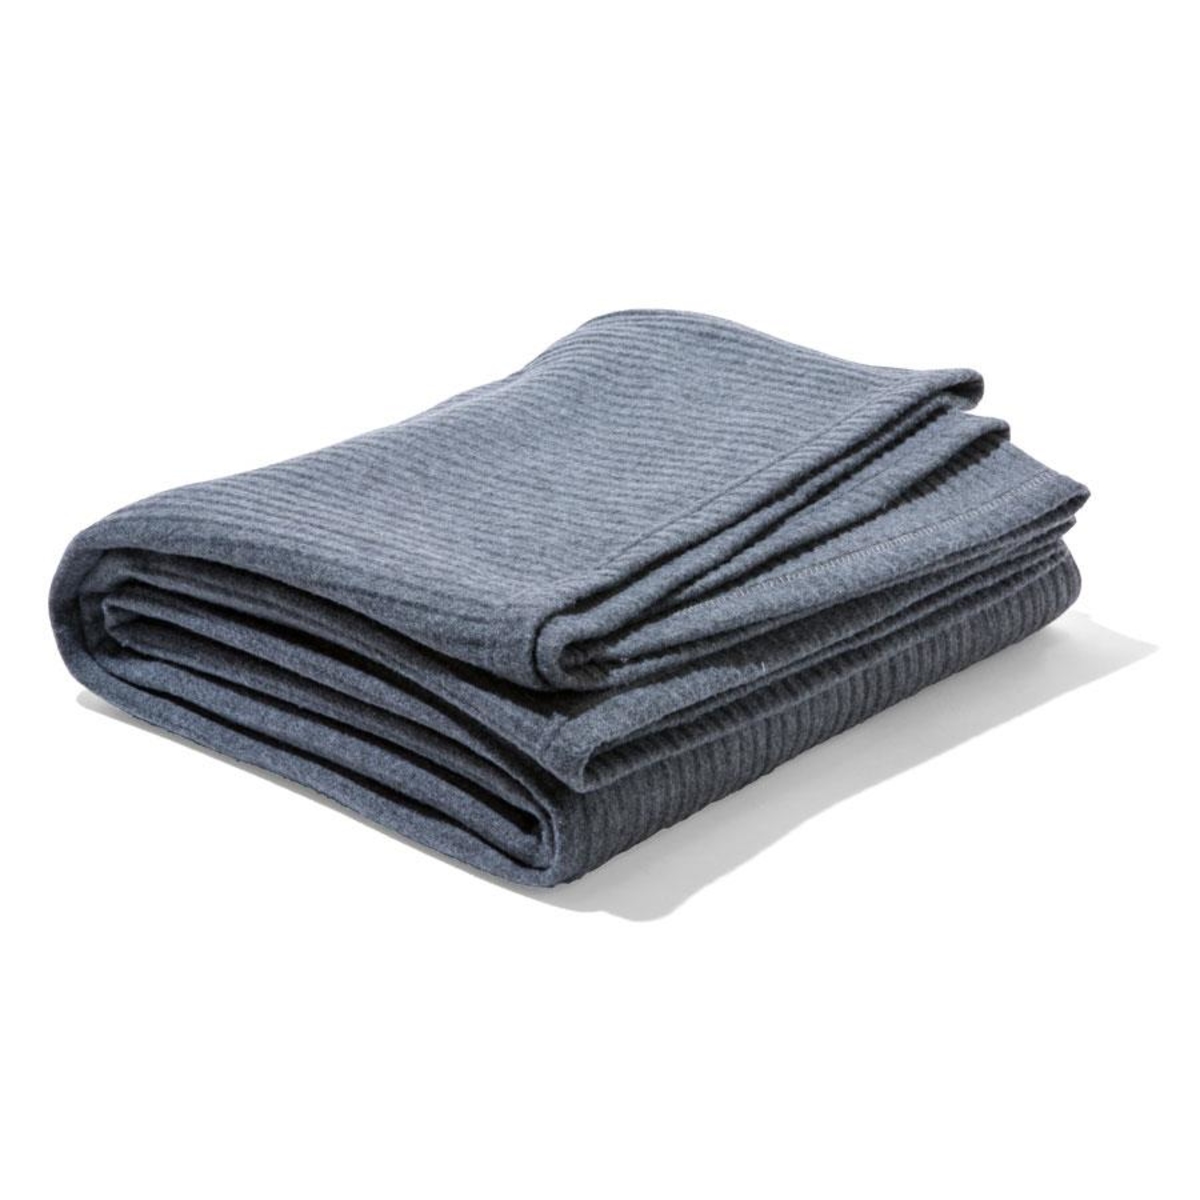 Kmart Ribbed Polar Fleece Blanket - Double/Queen Bed, Grey